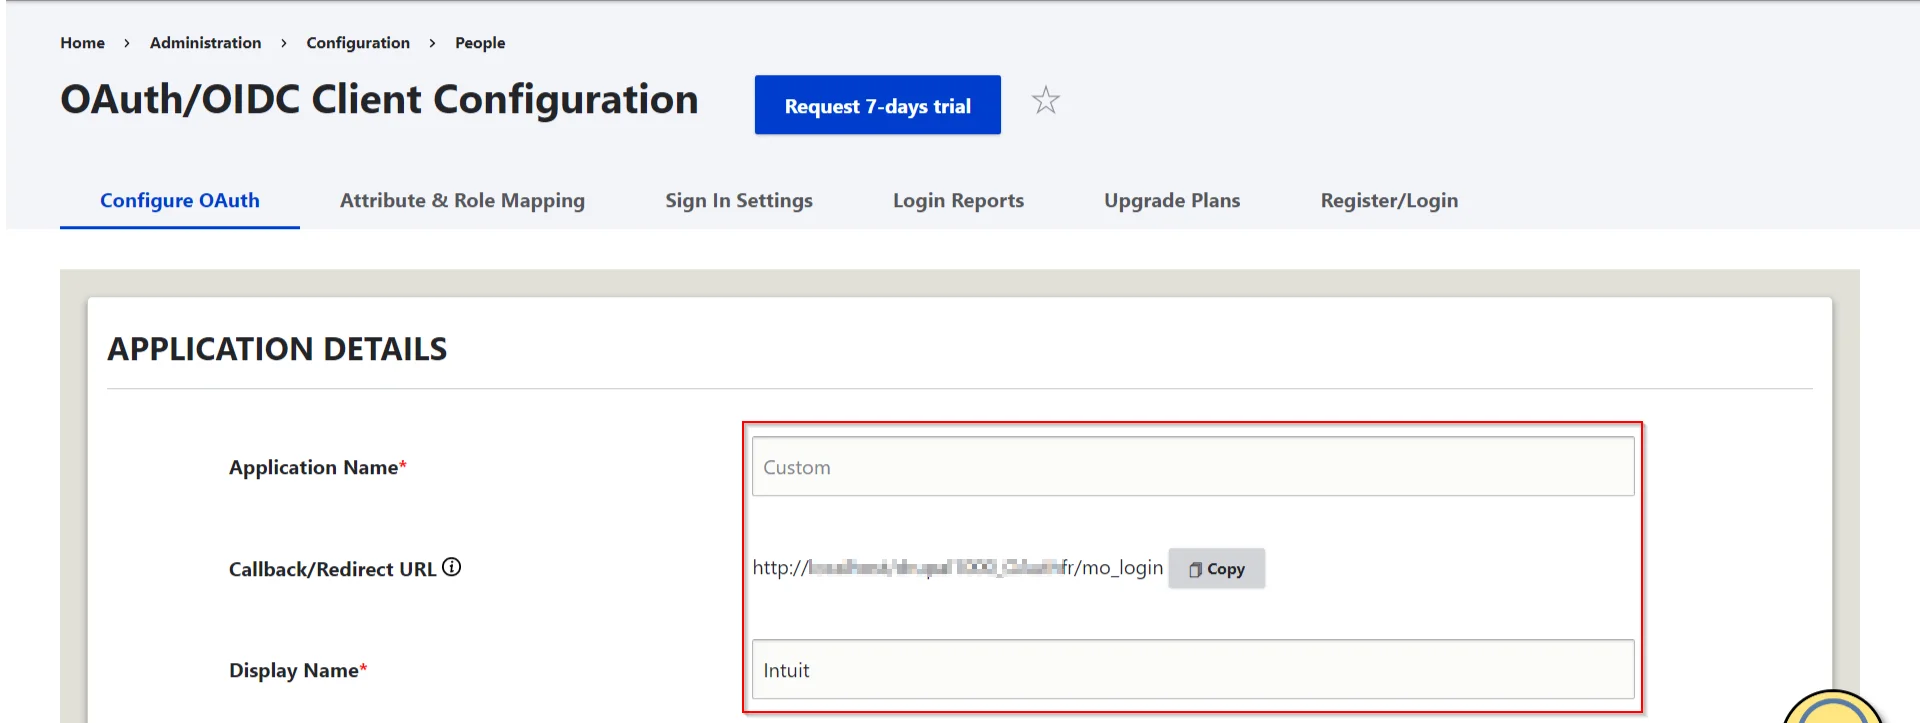 Drupal OAuth Client Single Sign-On - Under Konfigurera OAuth-fliken - Välj Intuit och kopiera Callback URL